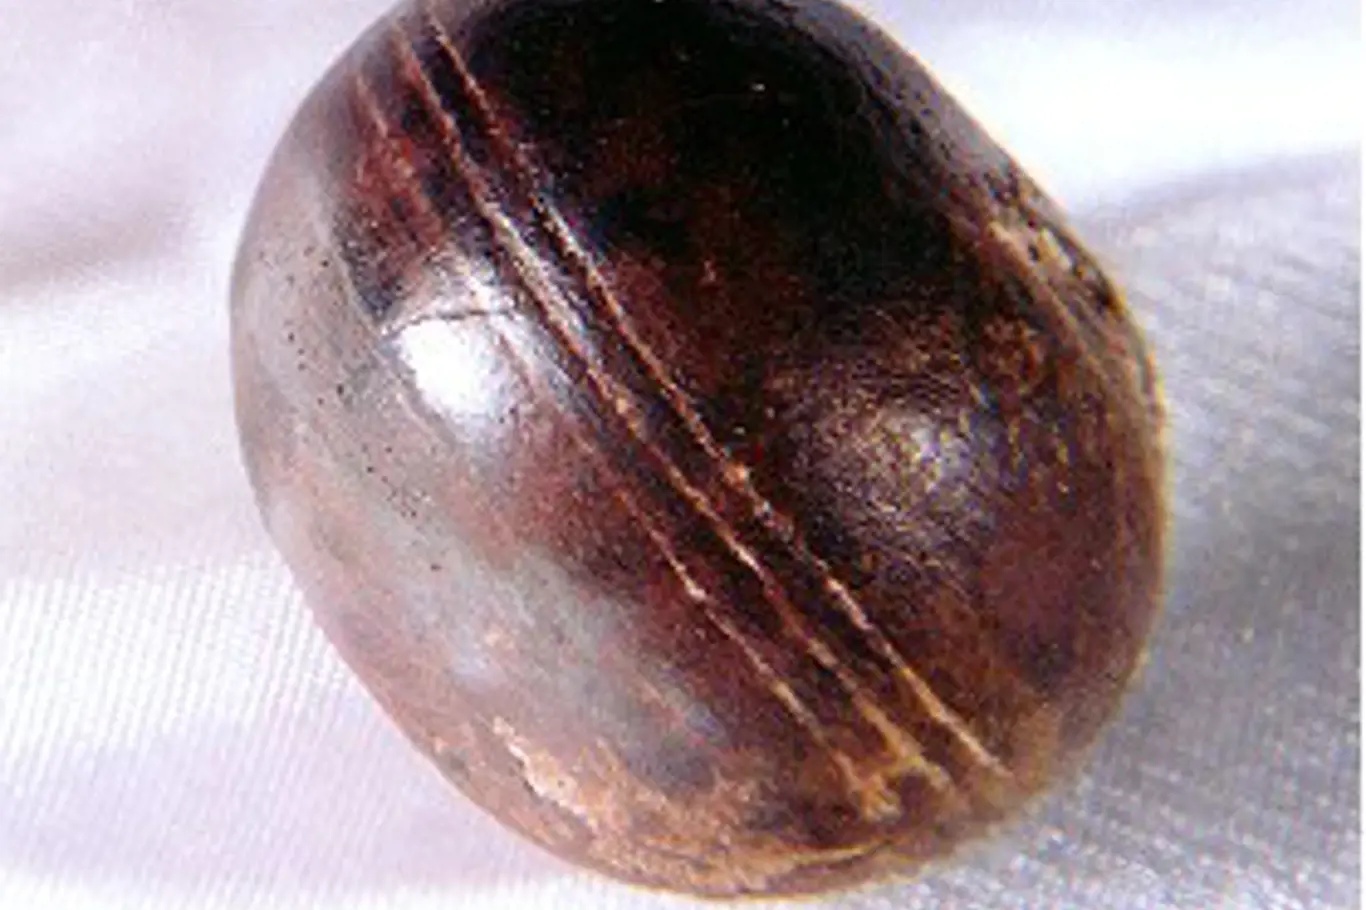 Klerksdorpská koule o průměru 3 až 4 centimetry a tloušťce 2,5 centimetru.